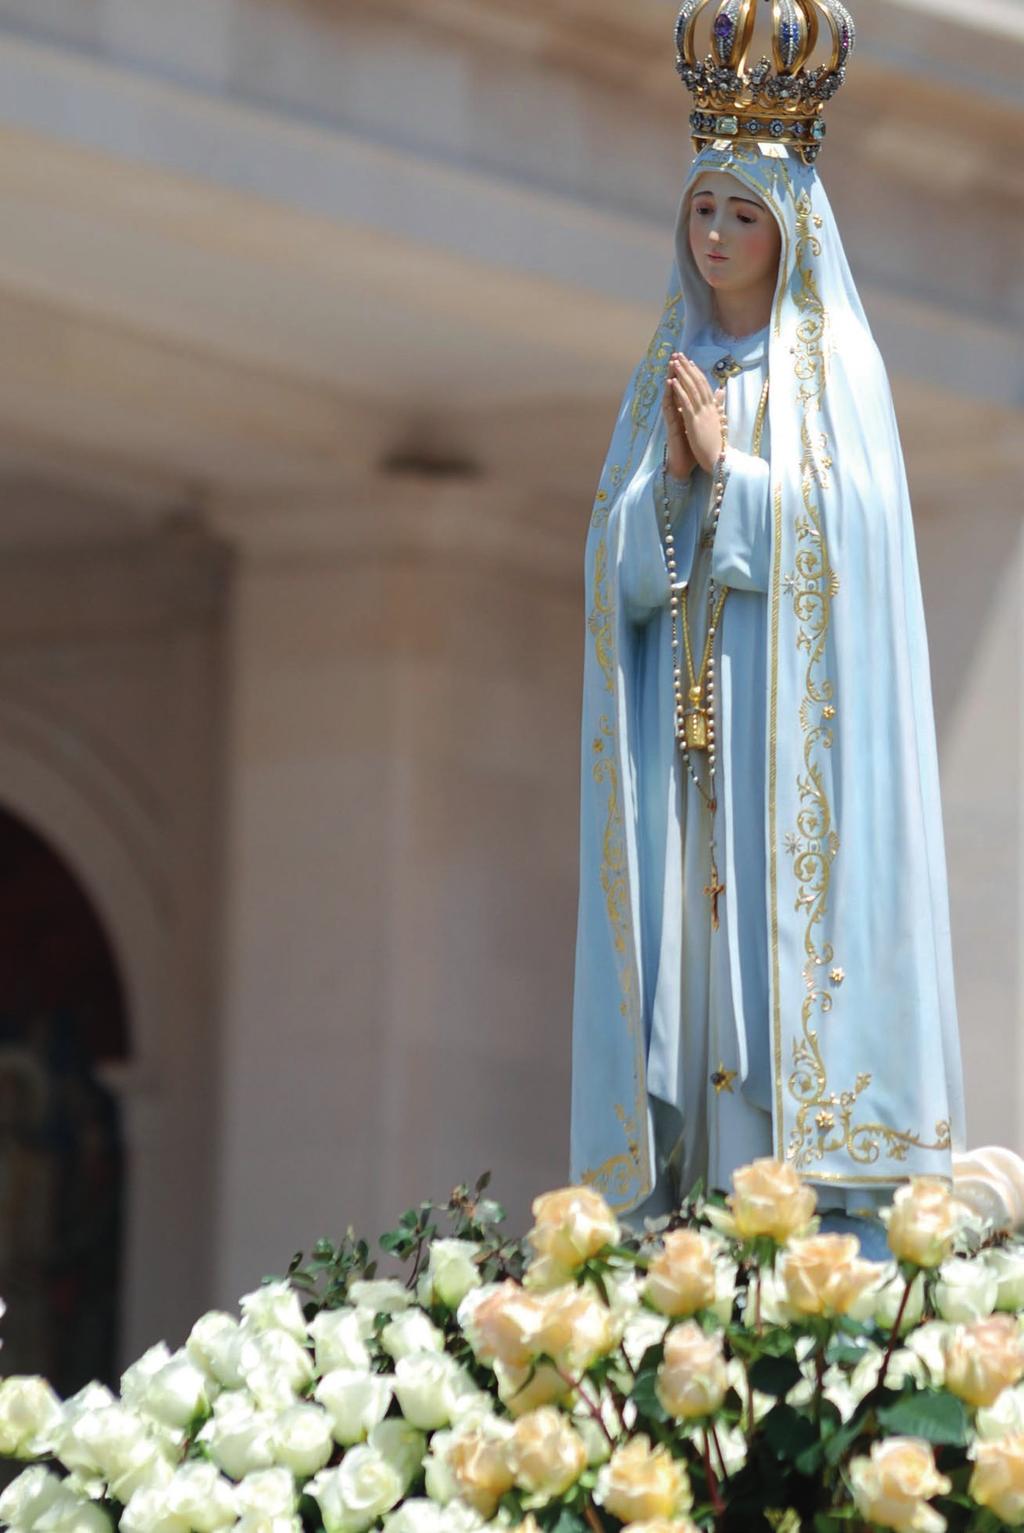 ultima parte, per volontà di san Giovanni Paolo II il 13 maggio 2000 promette la vittoria del Cuore Immacolato di Maria, a cui è chiesto di dedicare la pratica dei primi cinque sabati che, unitamente